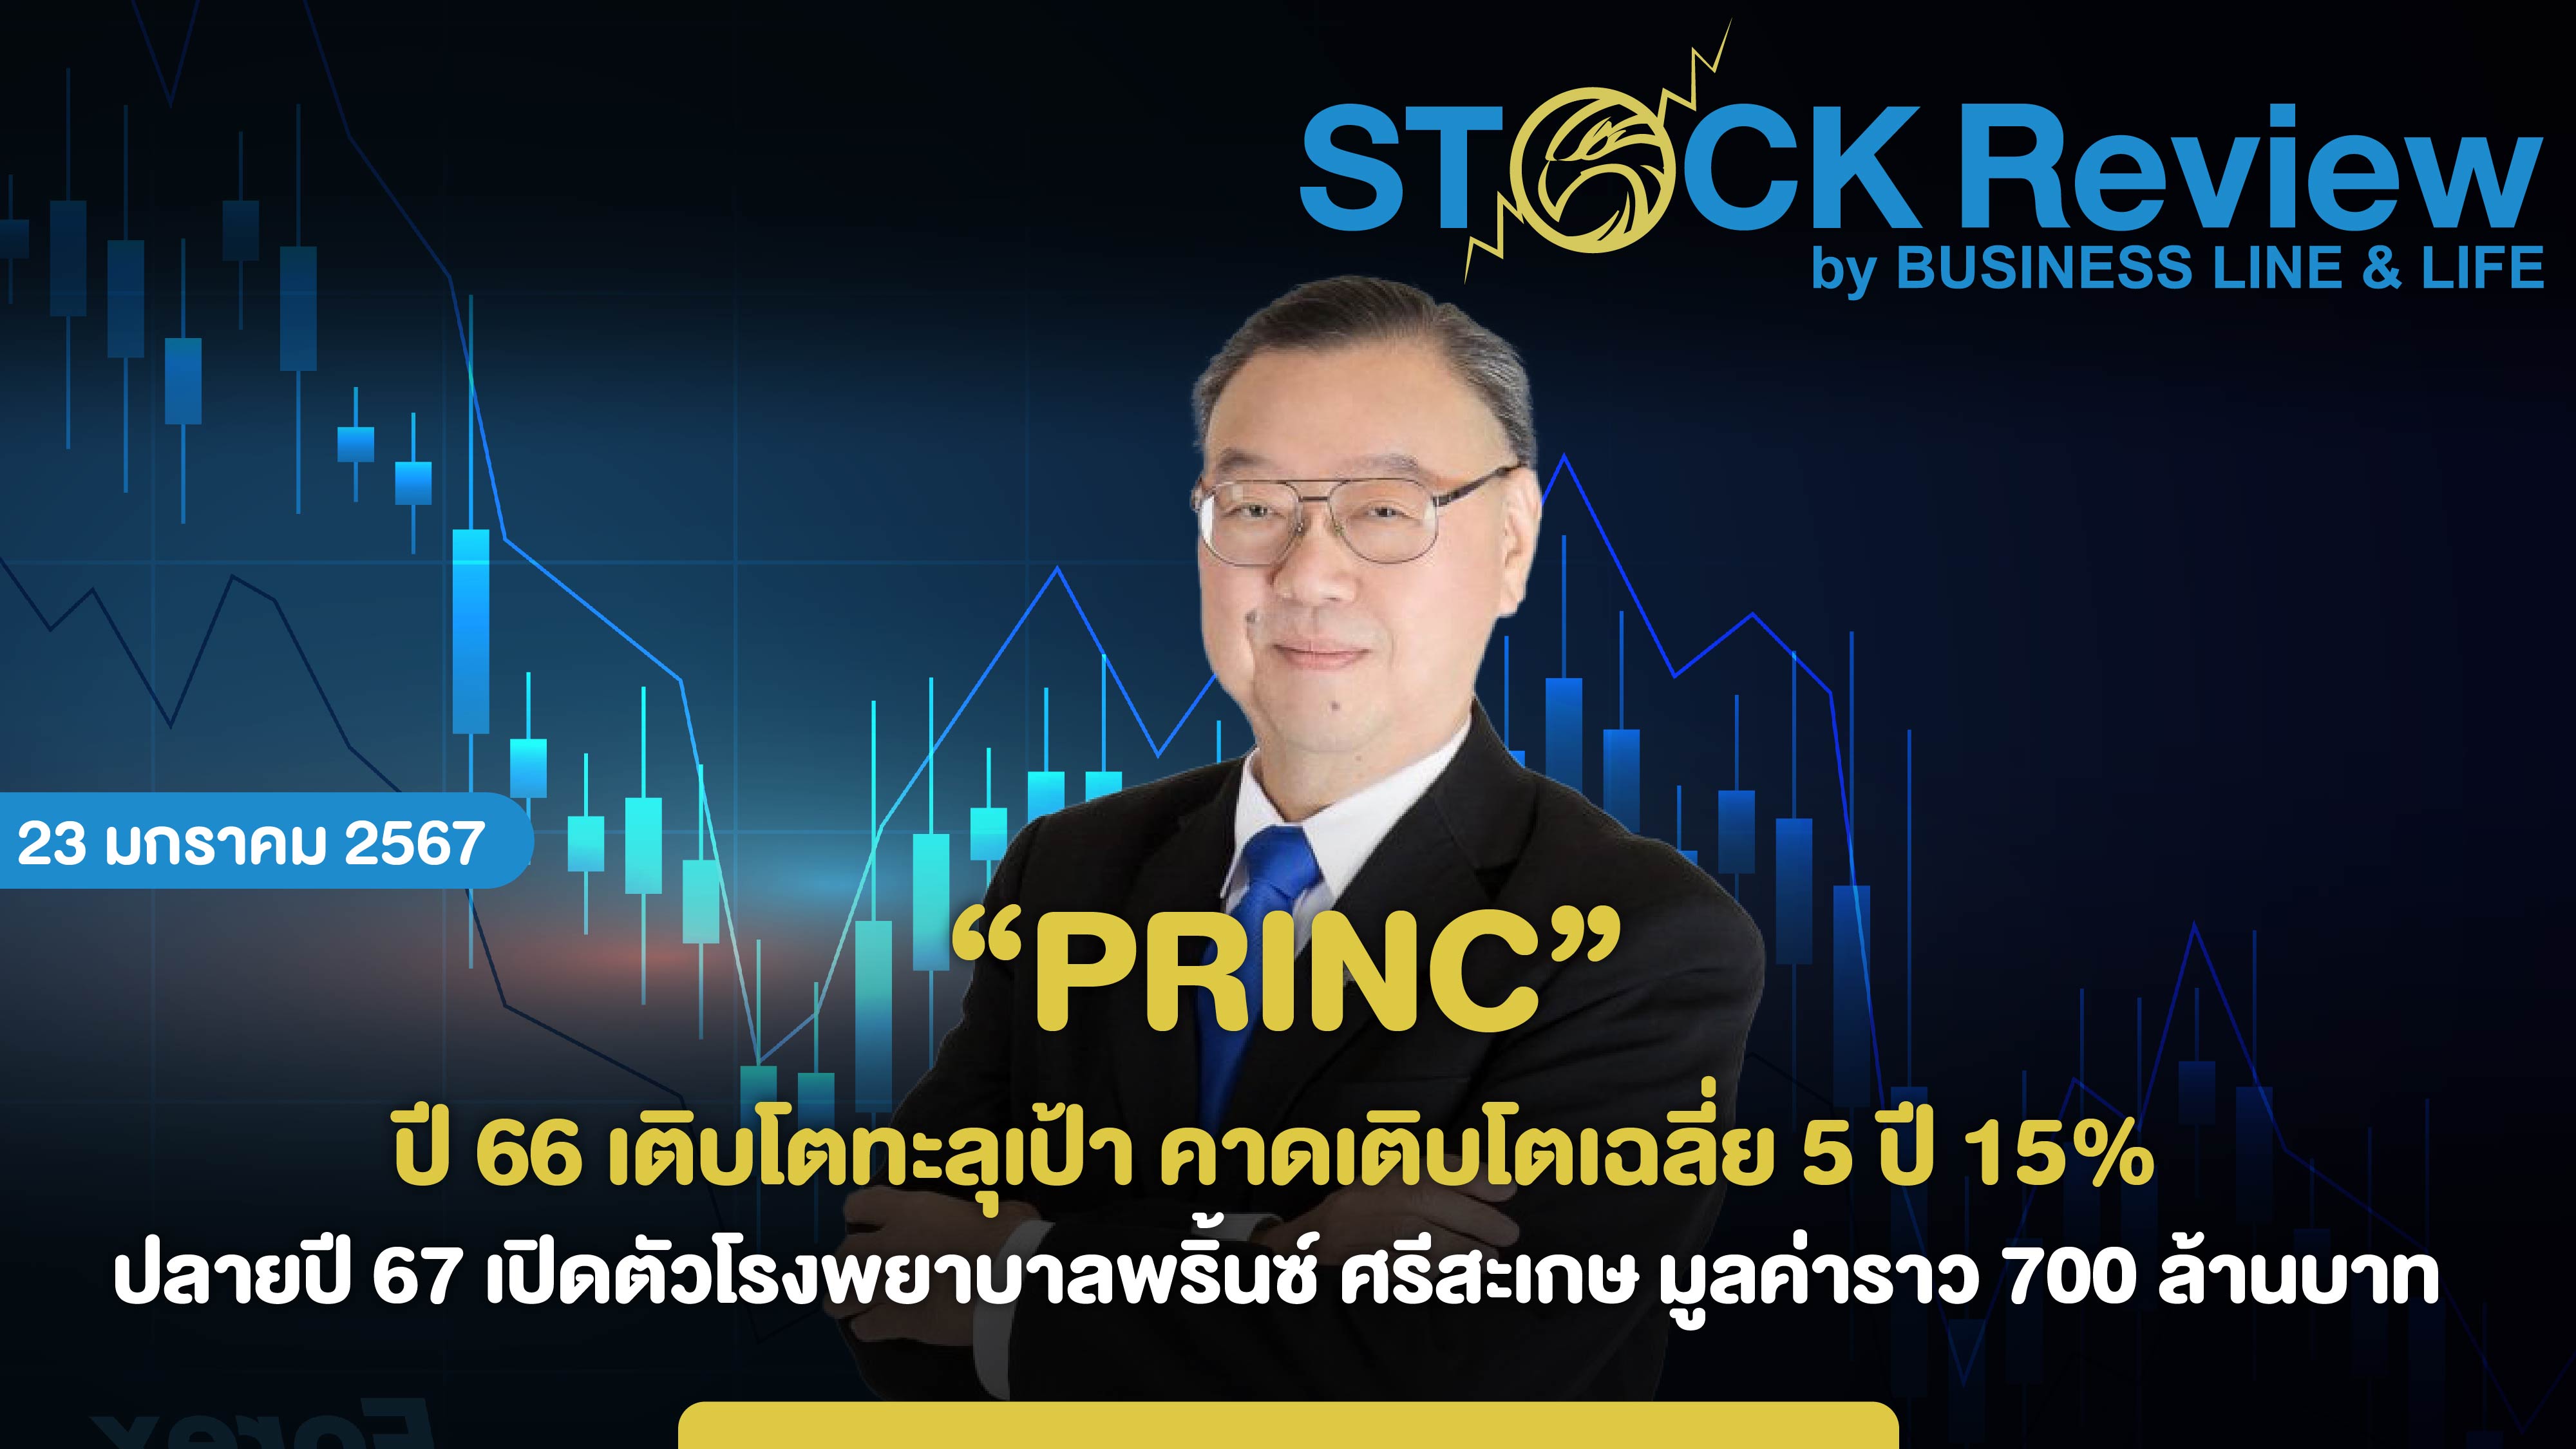 PRINC ปี 66 เติบโตทะลุเป้า คาดเติบโตเฉลี่ย 5 ปี 15%